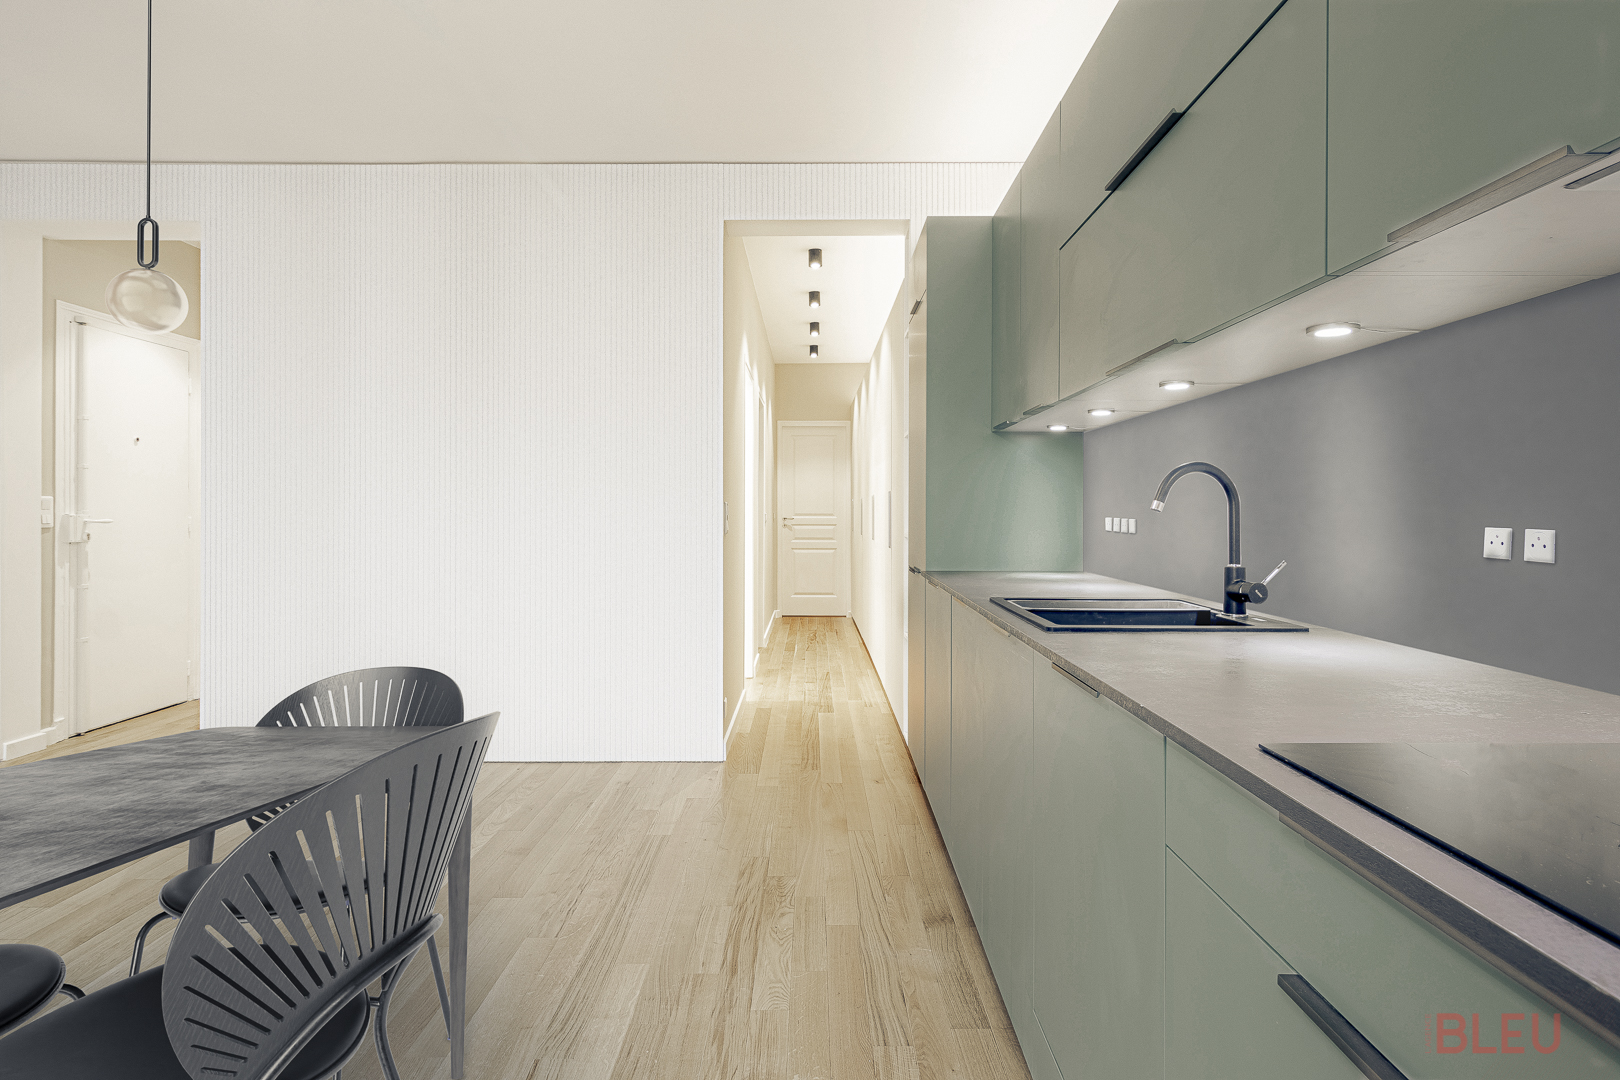 Cuisine moderne et minimaliste dans un appartement haussmannien rénové à Paris, conçue par un architecte d'intérieur.